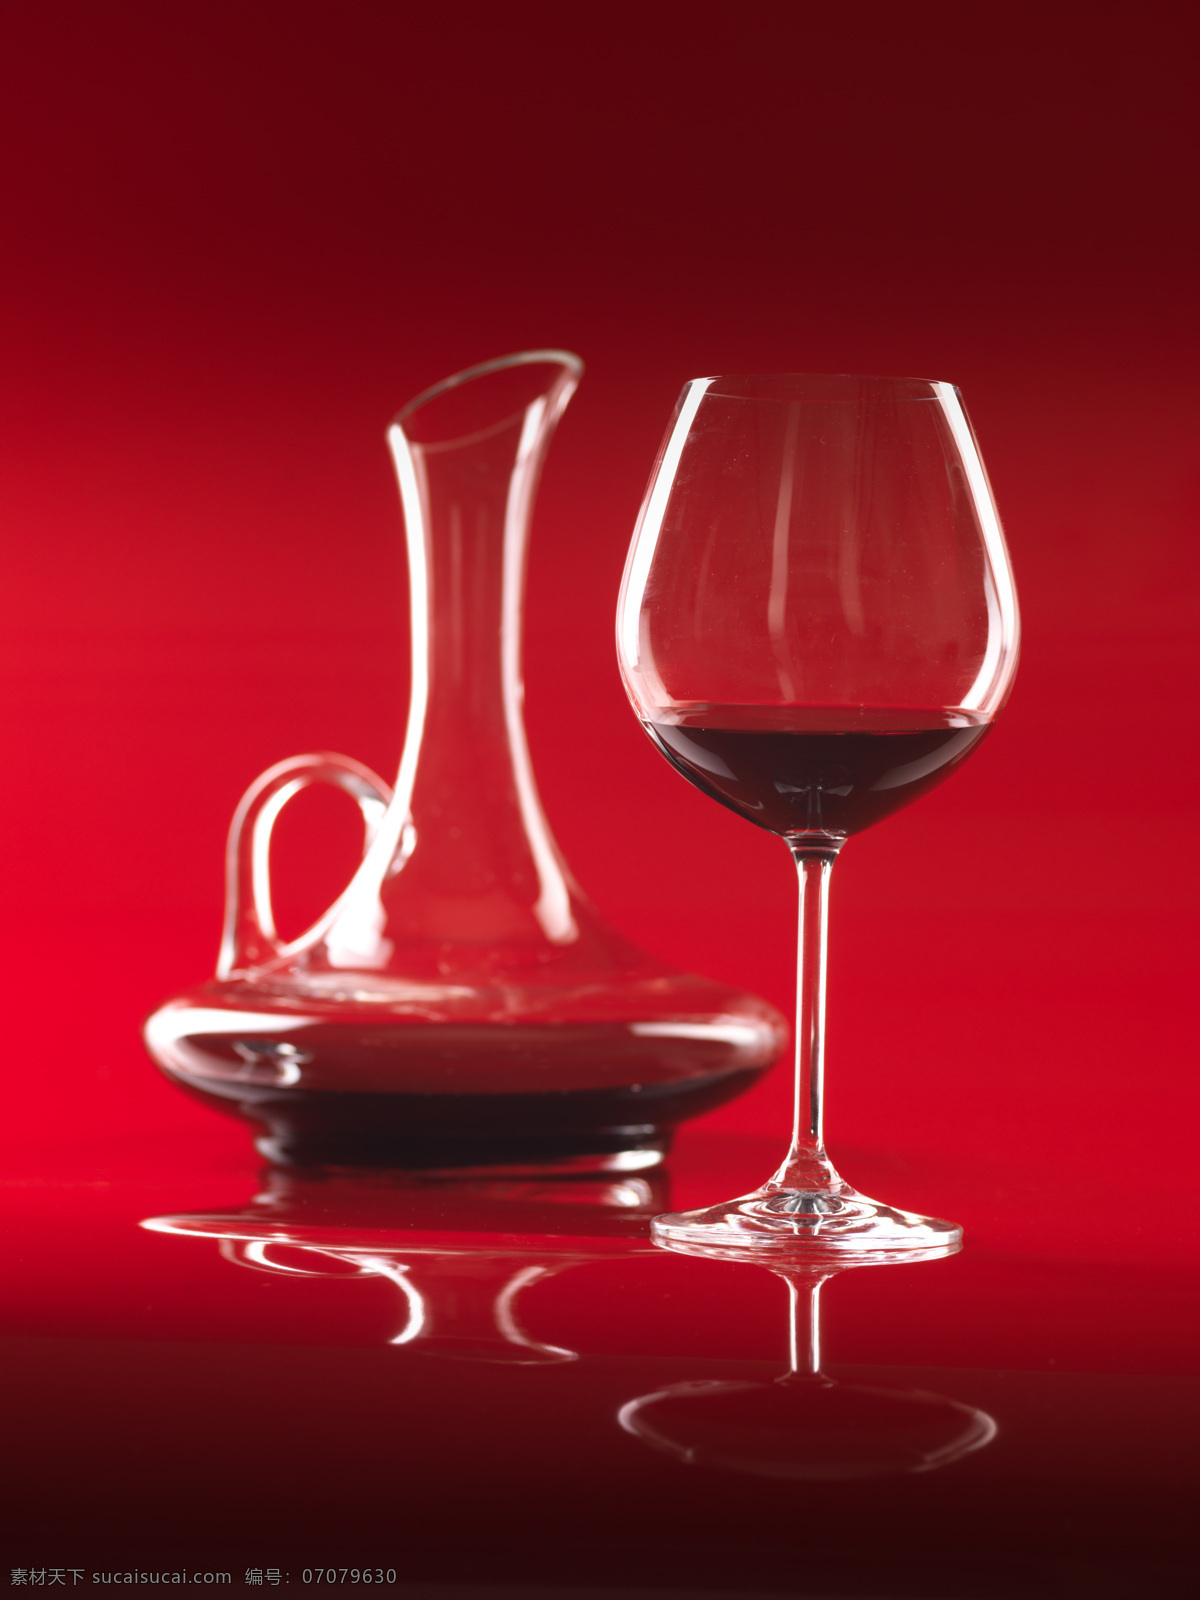 葡萄 酒杯 葡萄酒杯图片 葡萄洒 玻璃杯子 酒瓶 休闲饮品 酒水饮料 餐饮美食 酒类图片